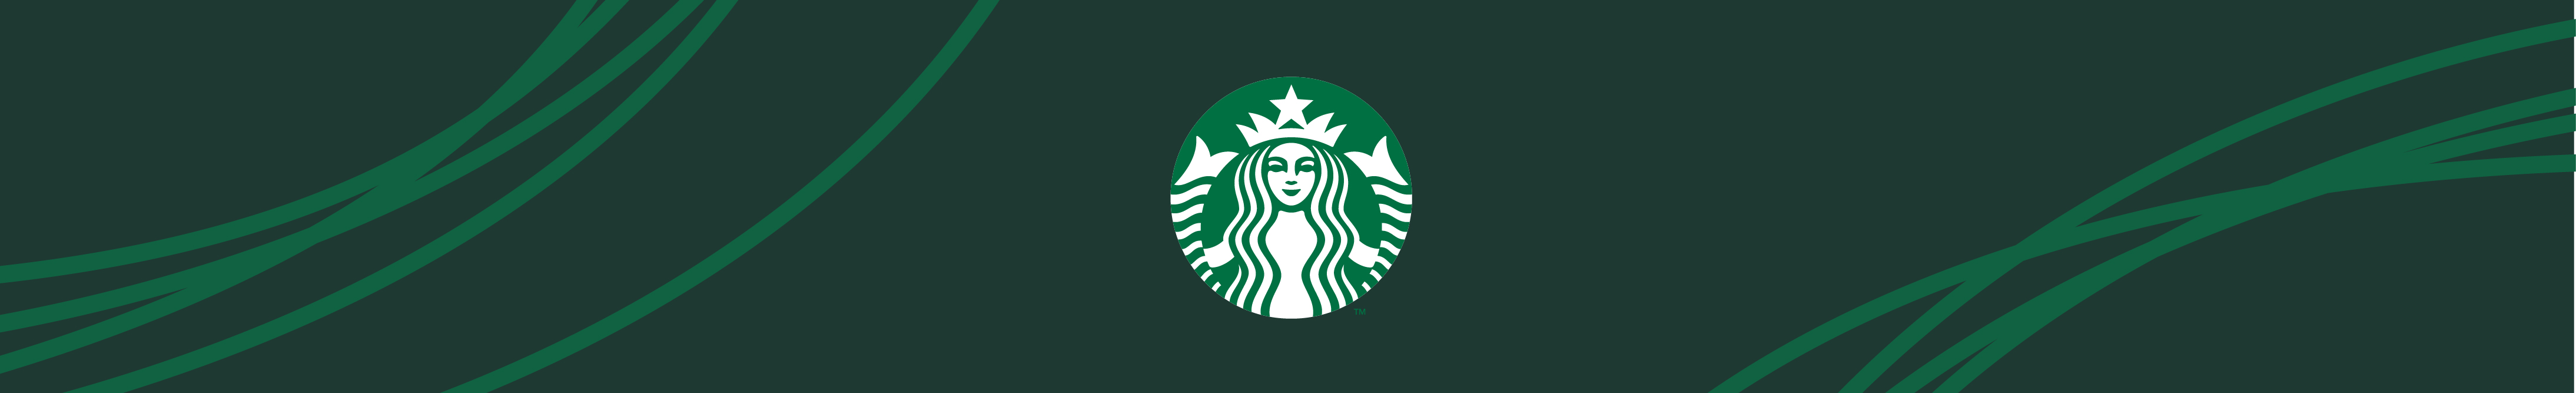 Starbucks Careers